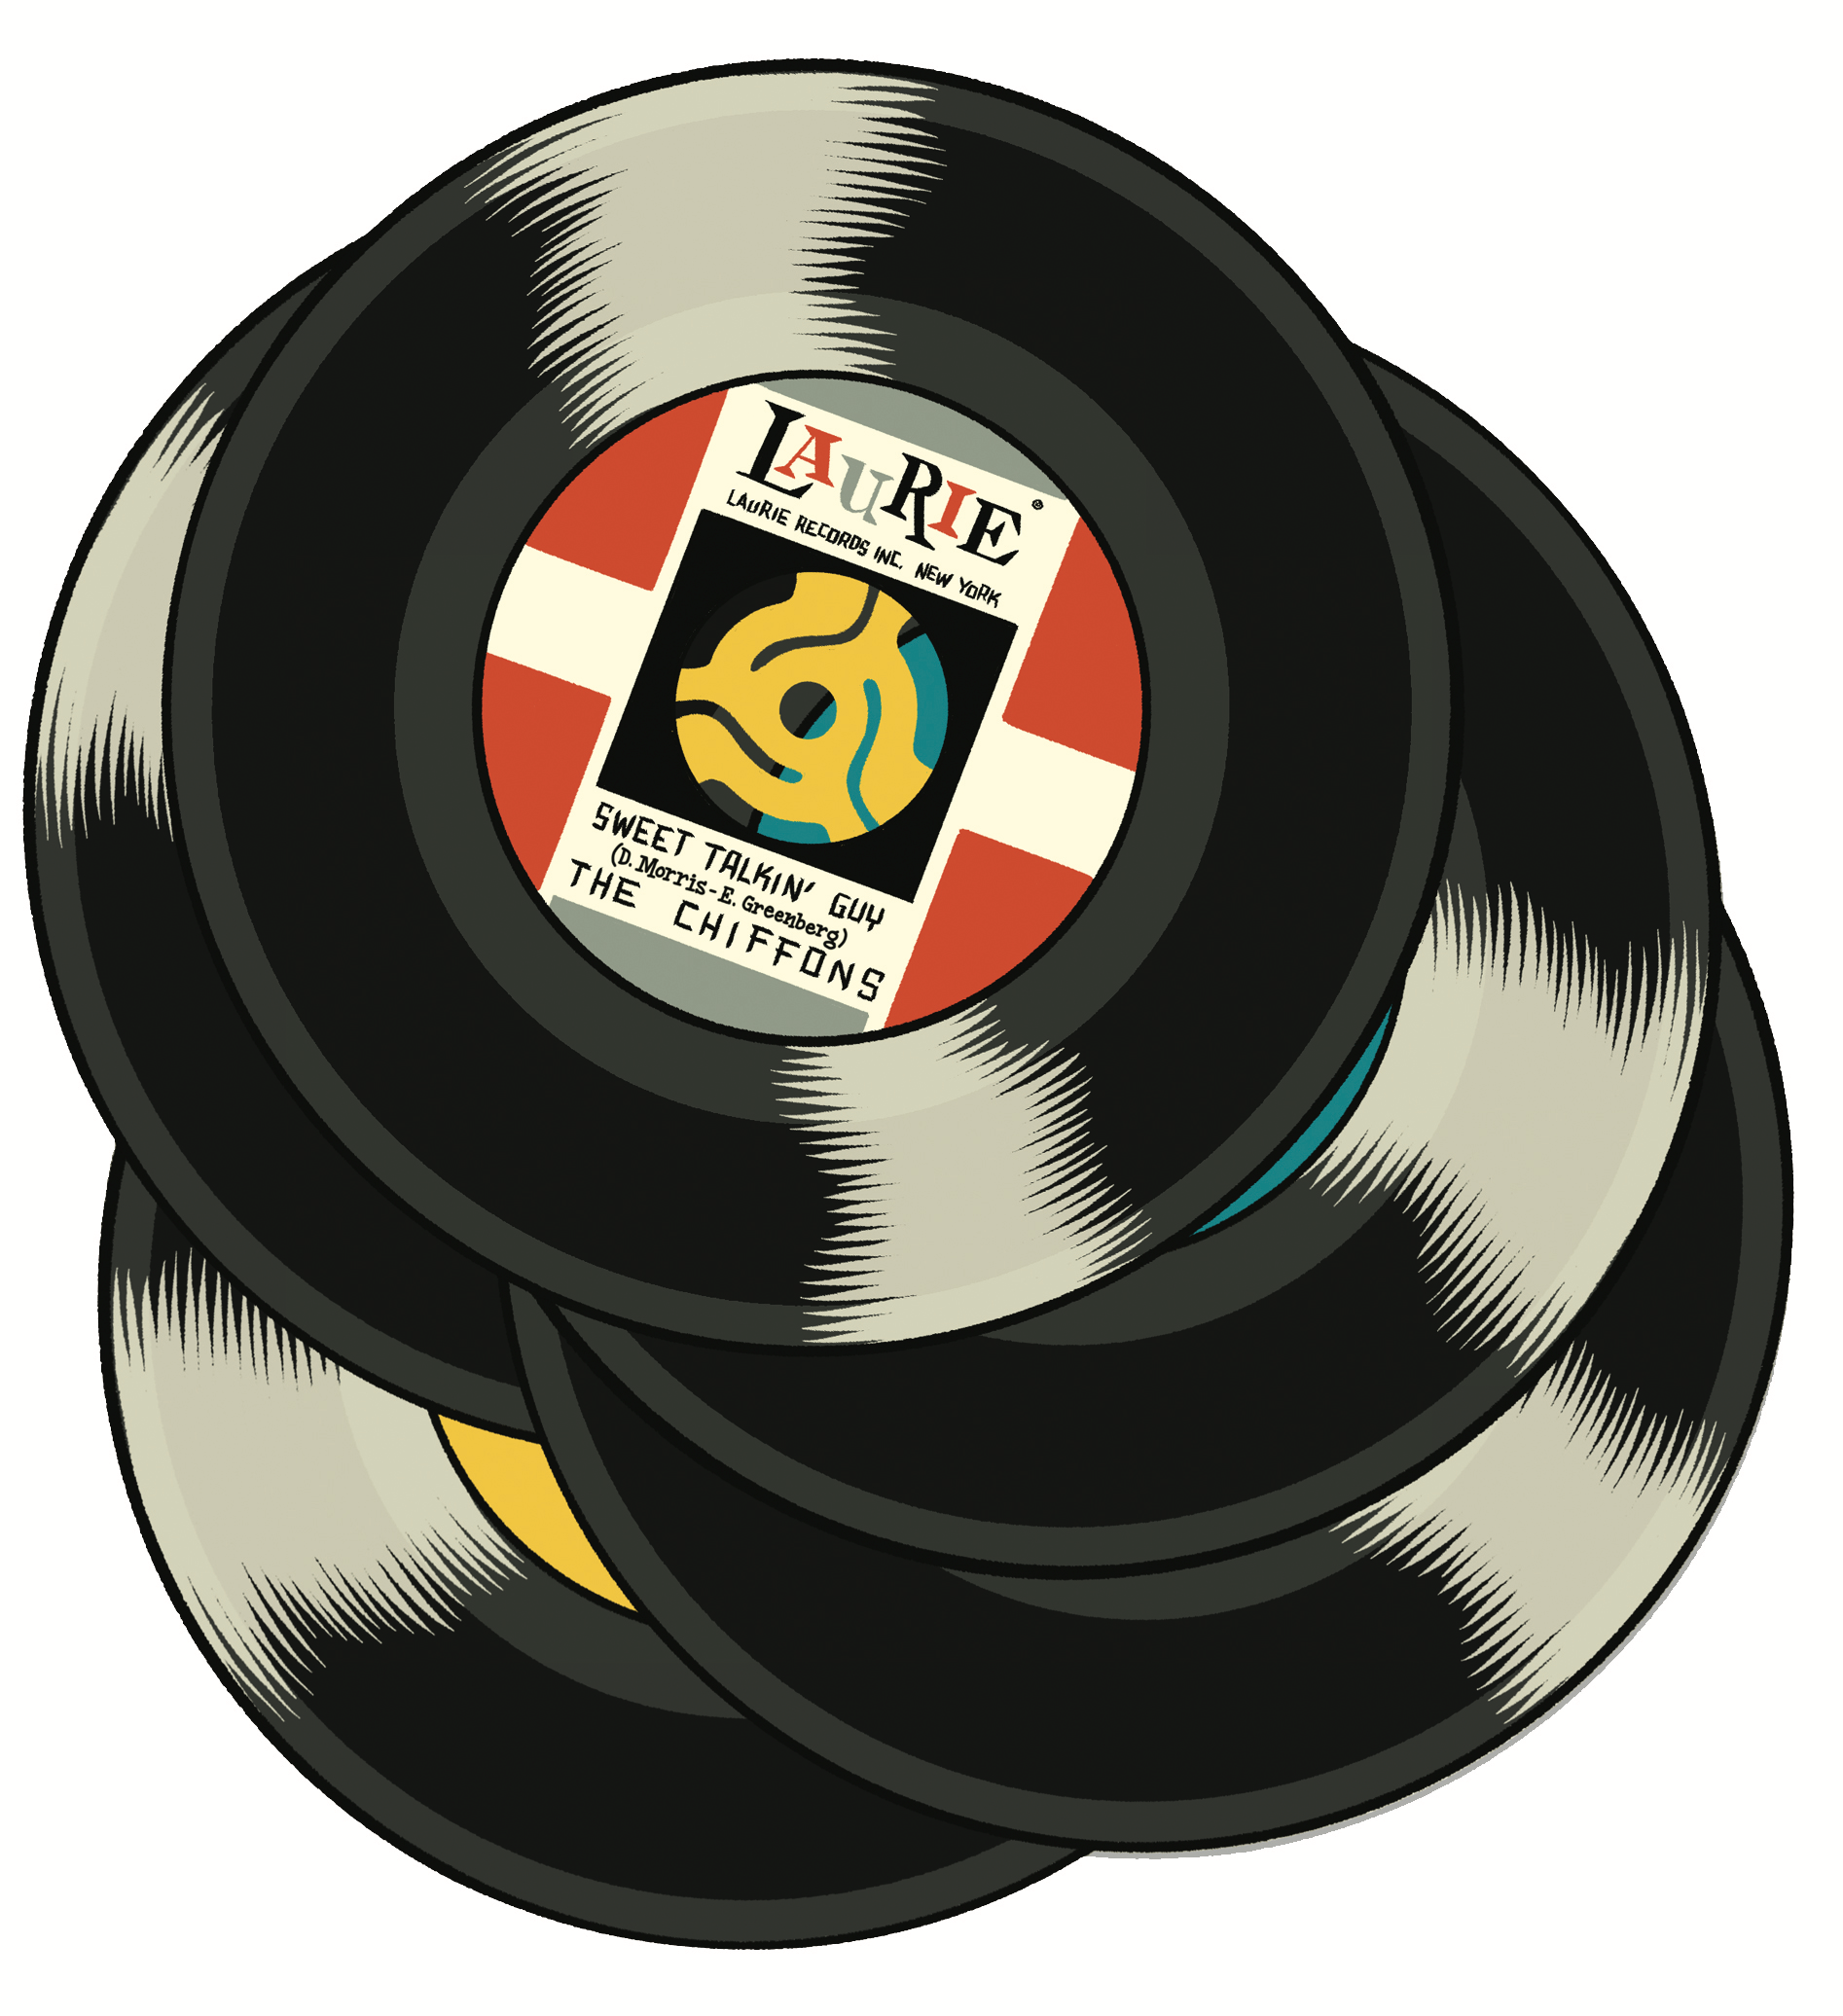 Illustration of vinyl records